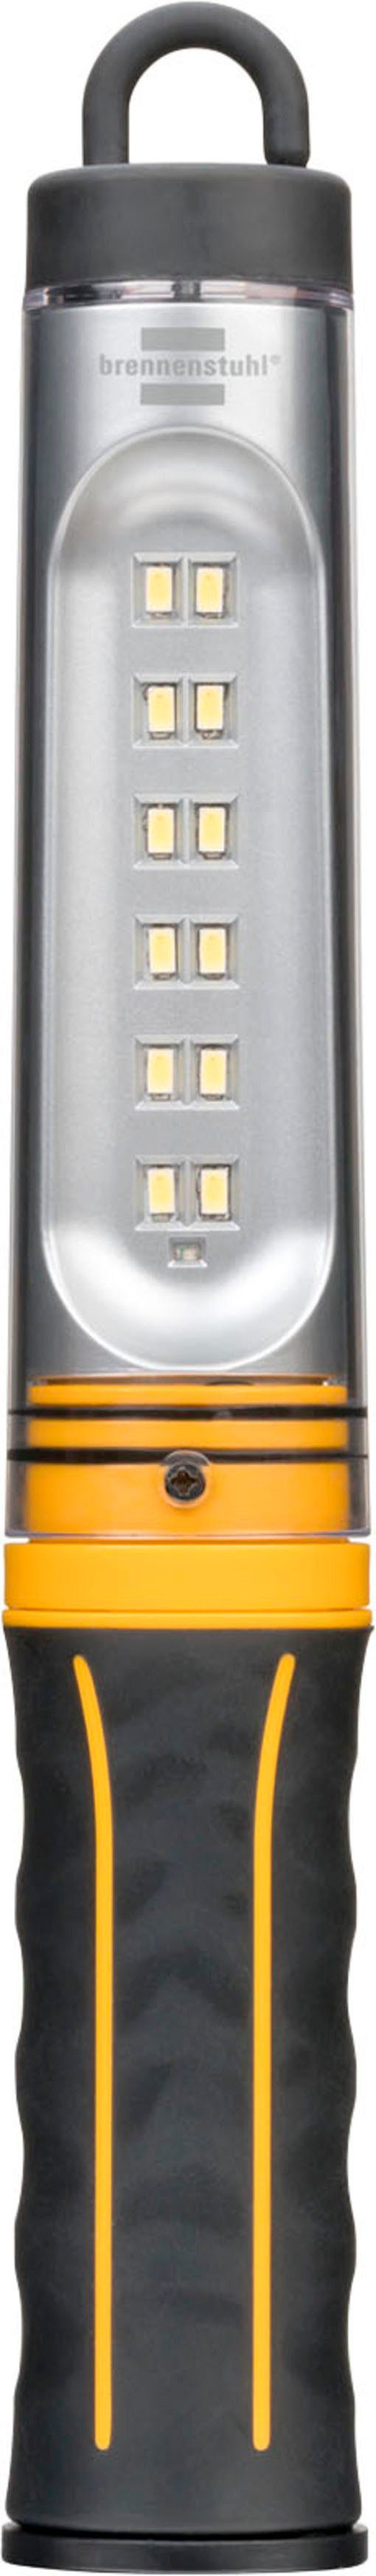 Brennenstuhl Handleuchte A, integriertem Akku USB-Kabel mit und WL 500